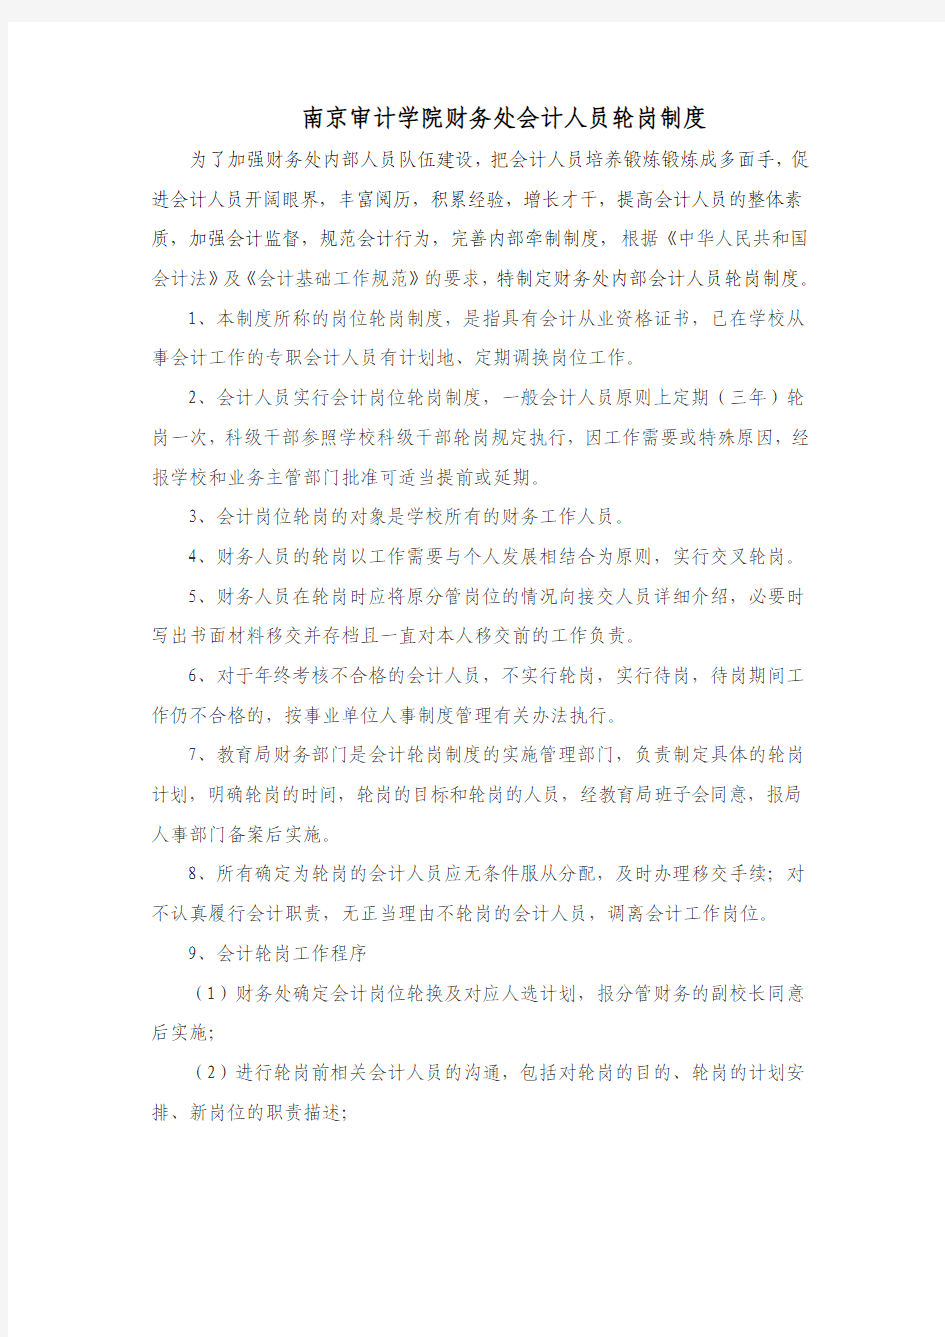 南京审计学院财务处会计人员轮岗制度 - 财务处 精品